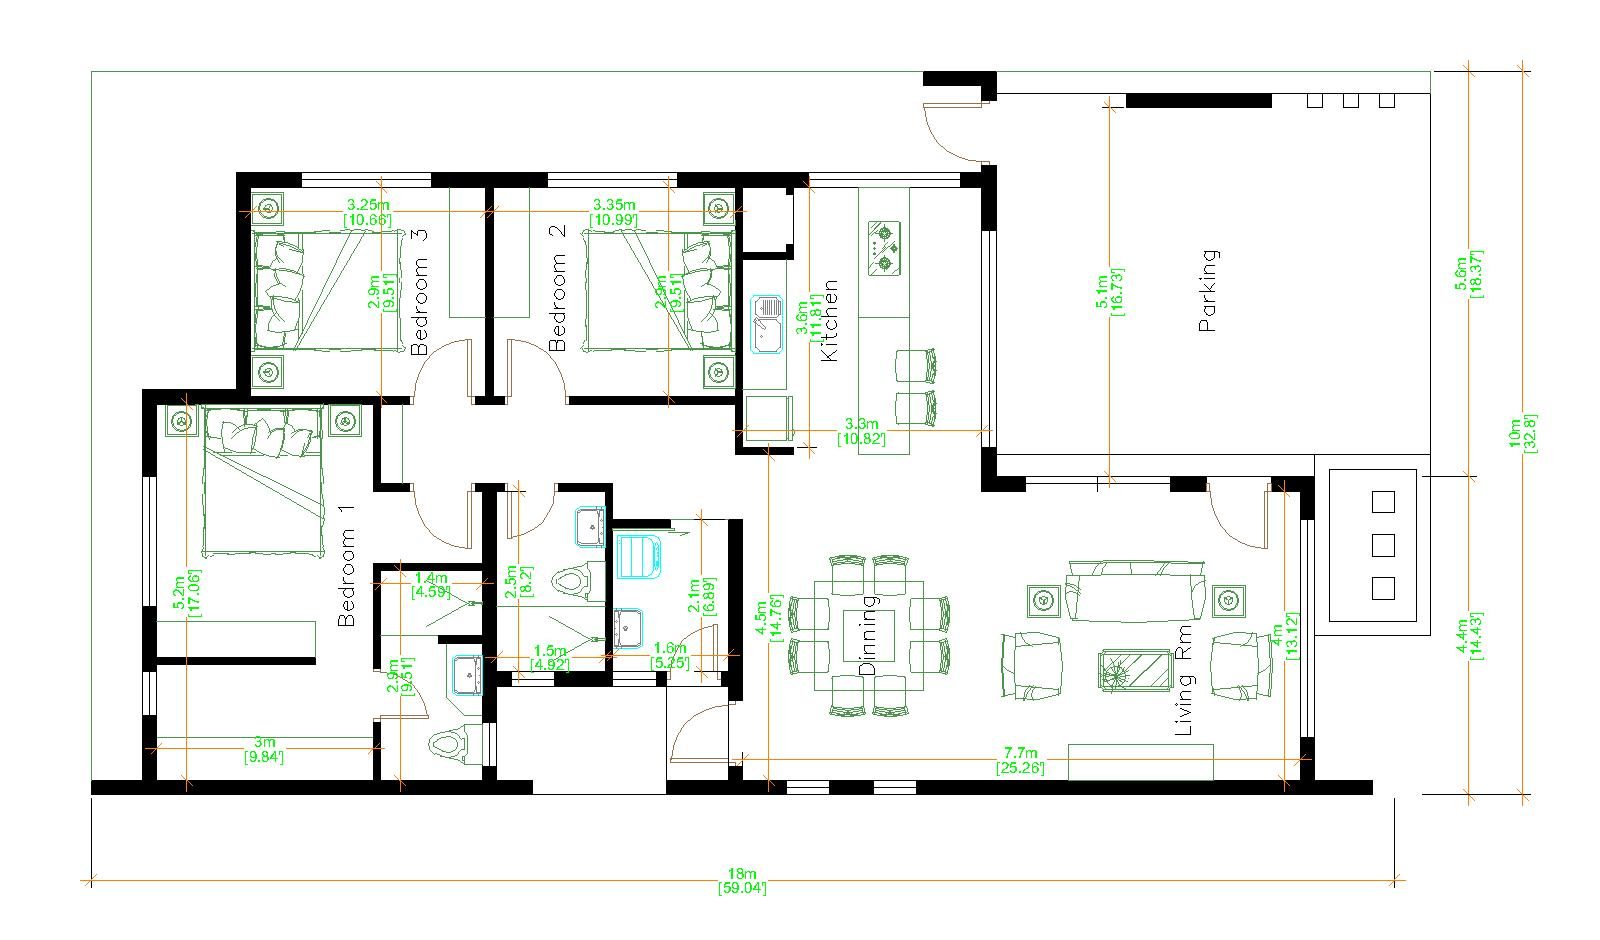 House Design 3d 10x18 Meter 33x59 Feet 3 Bedrooms Terrace Roof floor plan